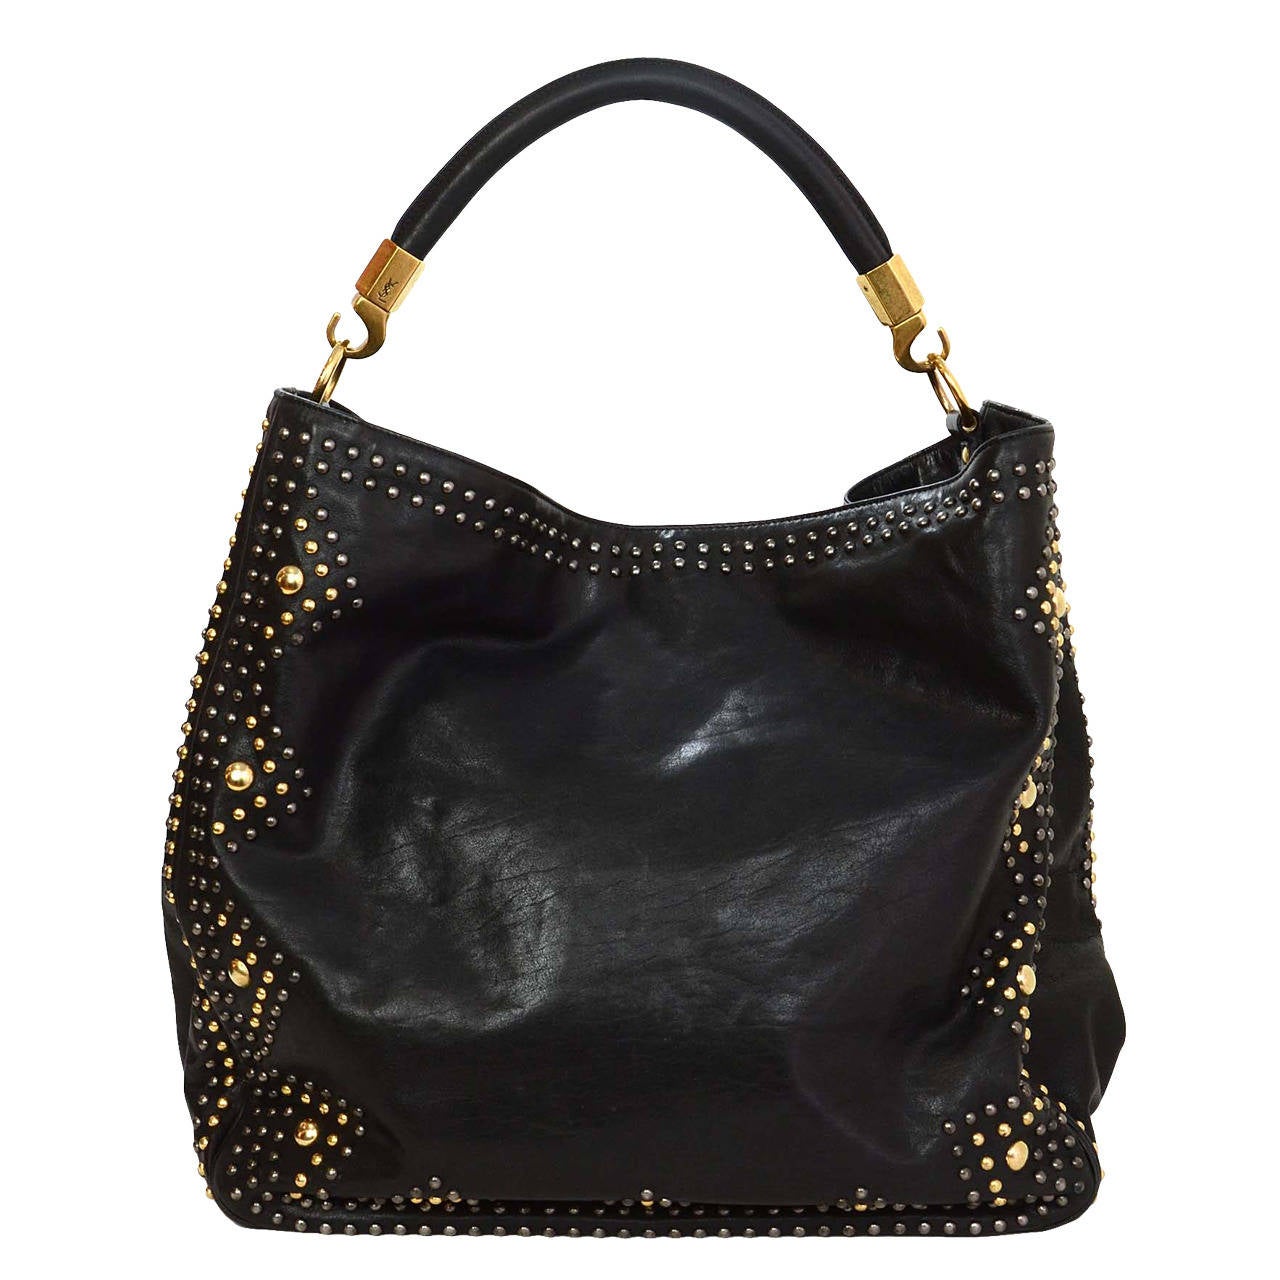 YSL YVES SAINT LAURENT Black Leather Roady Studded Hobo Bag rt. $2, 295